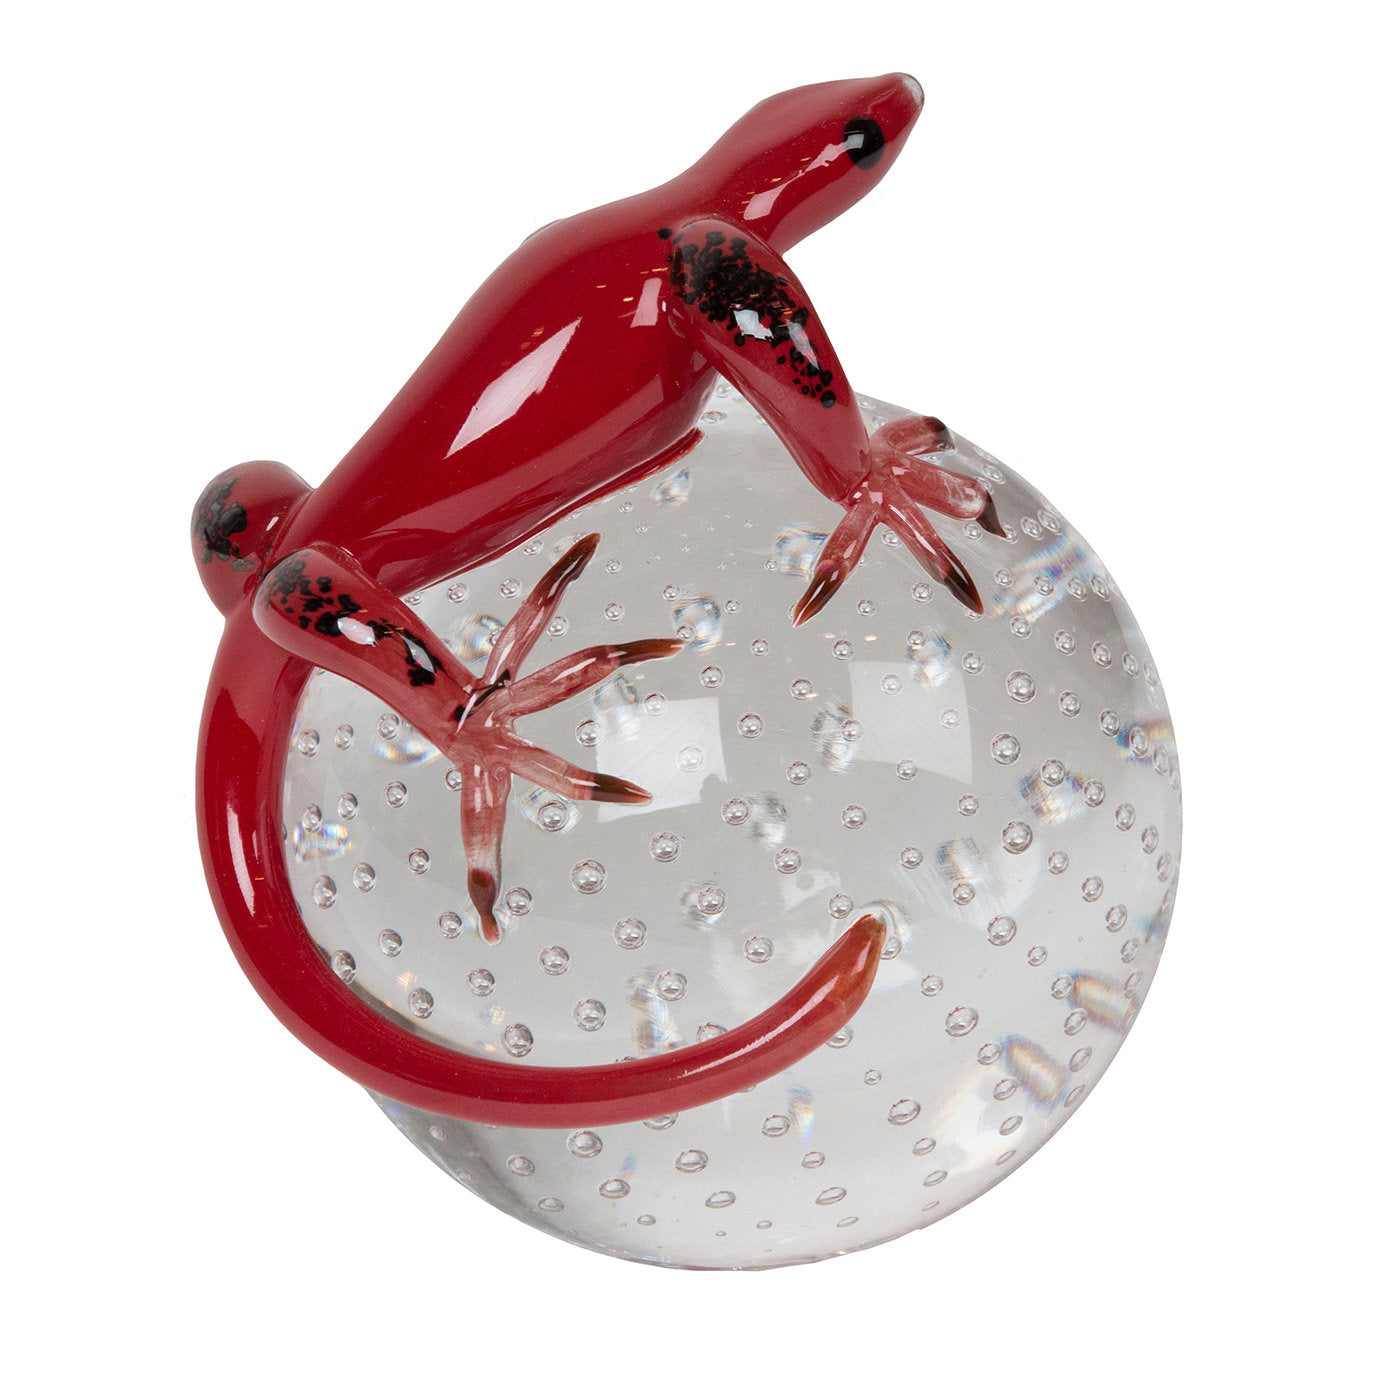 Geco de cristal rojo sobre esfera - Vista principal